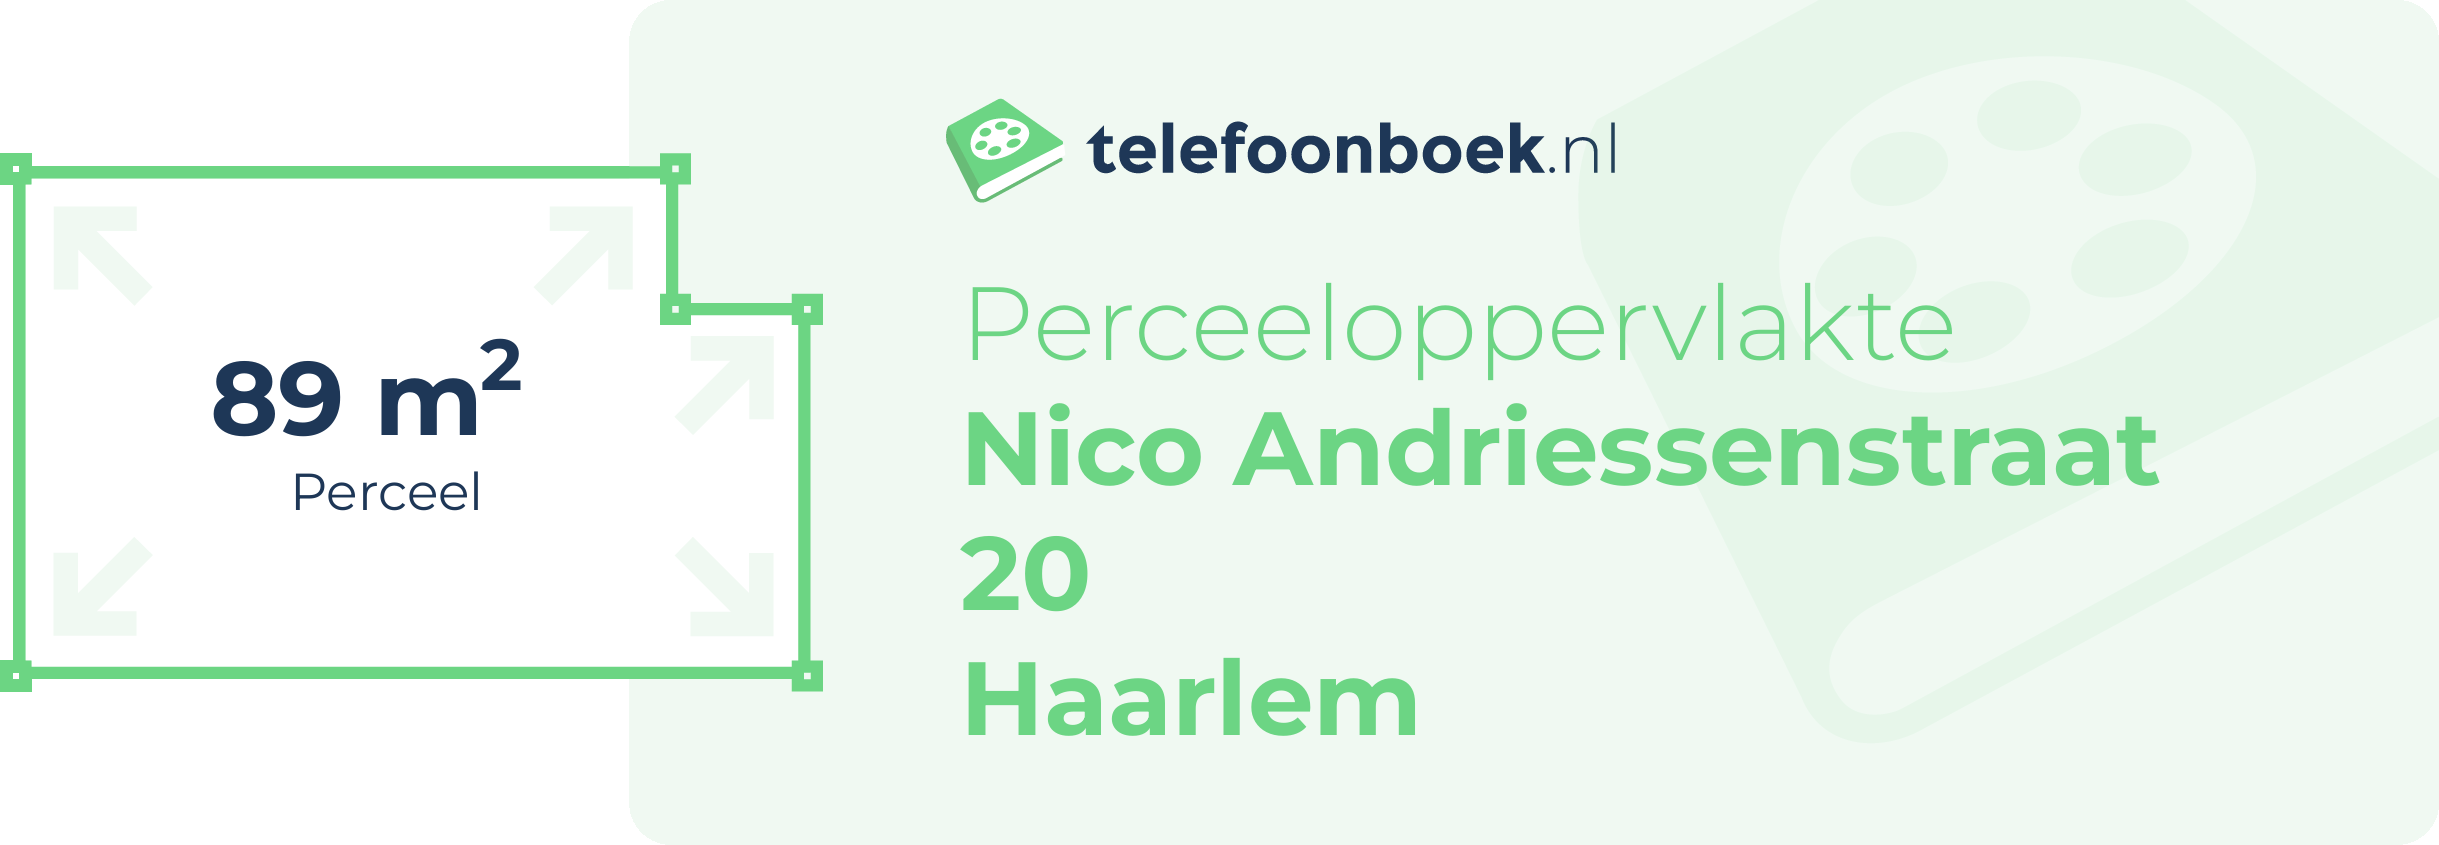 Perceeloppervlakte Nico Andriessenstraat 20 Haarlem